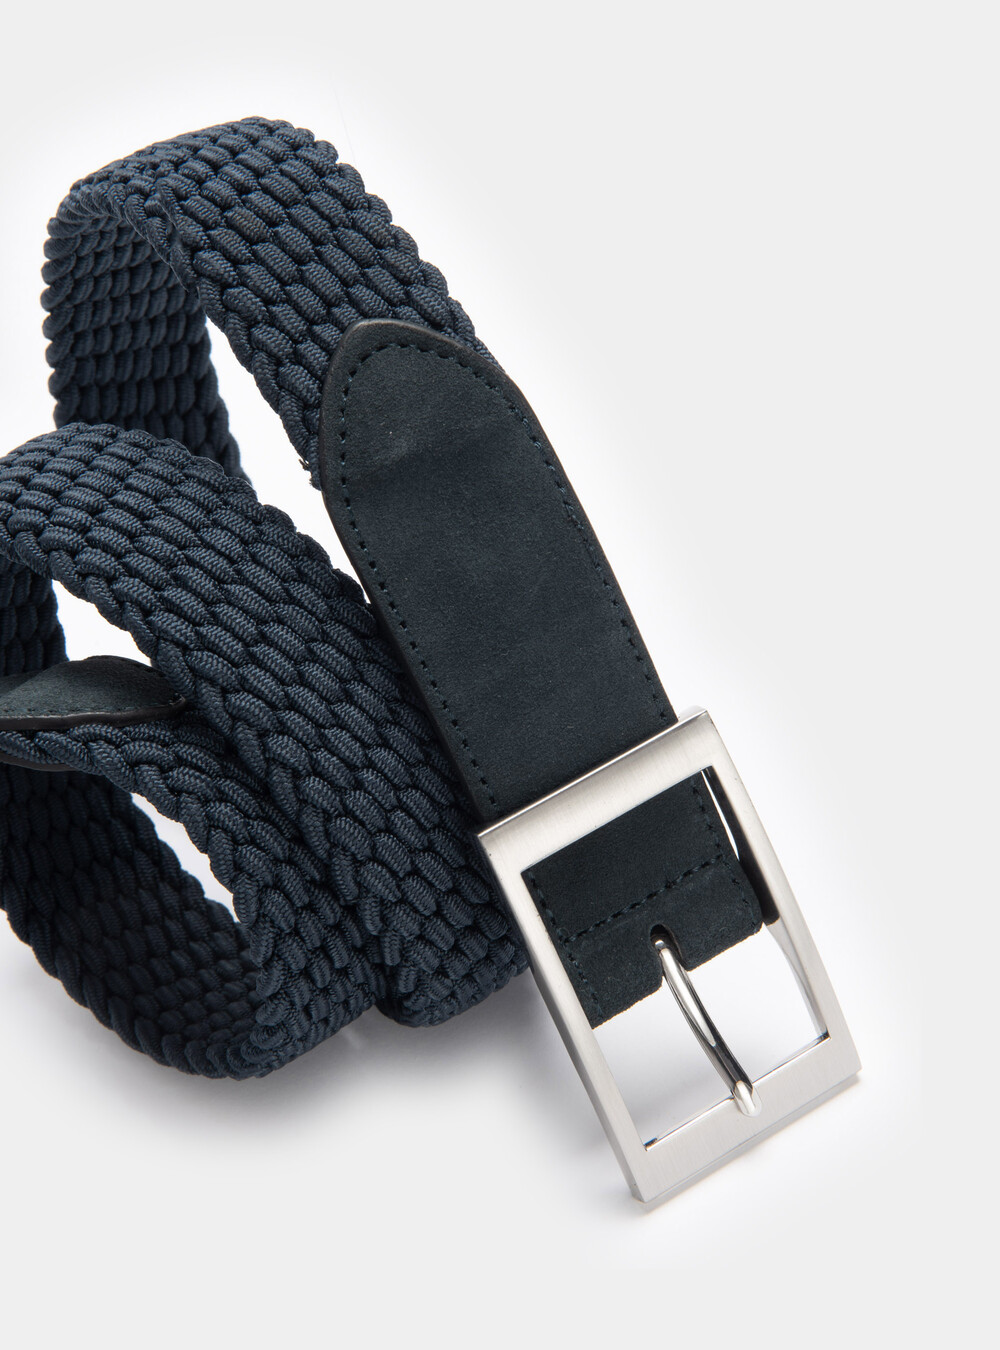 Elastic braided belt with suede trim | GutteridgeUS | Accessories Uomo